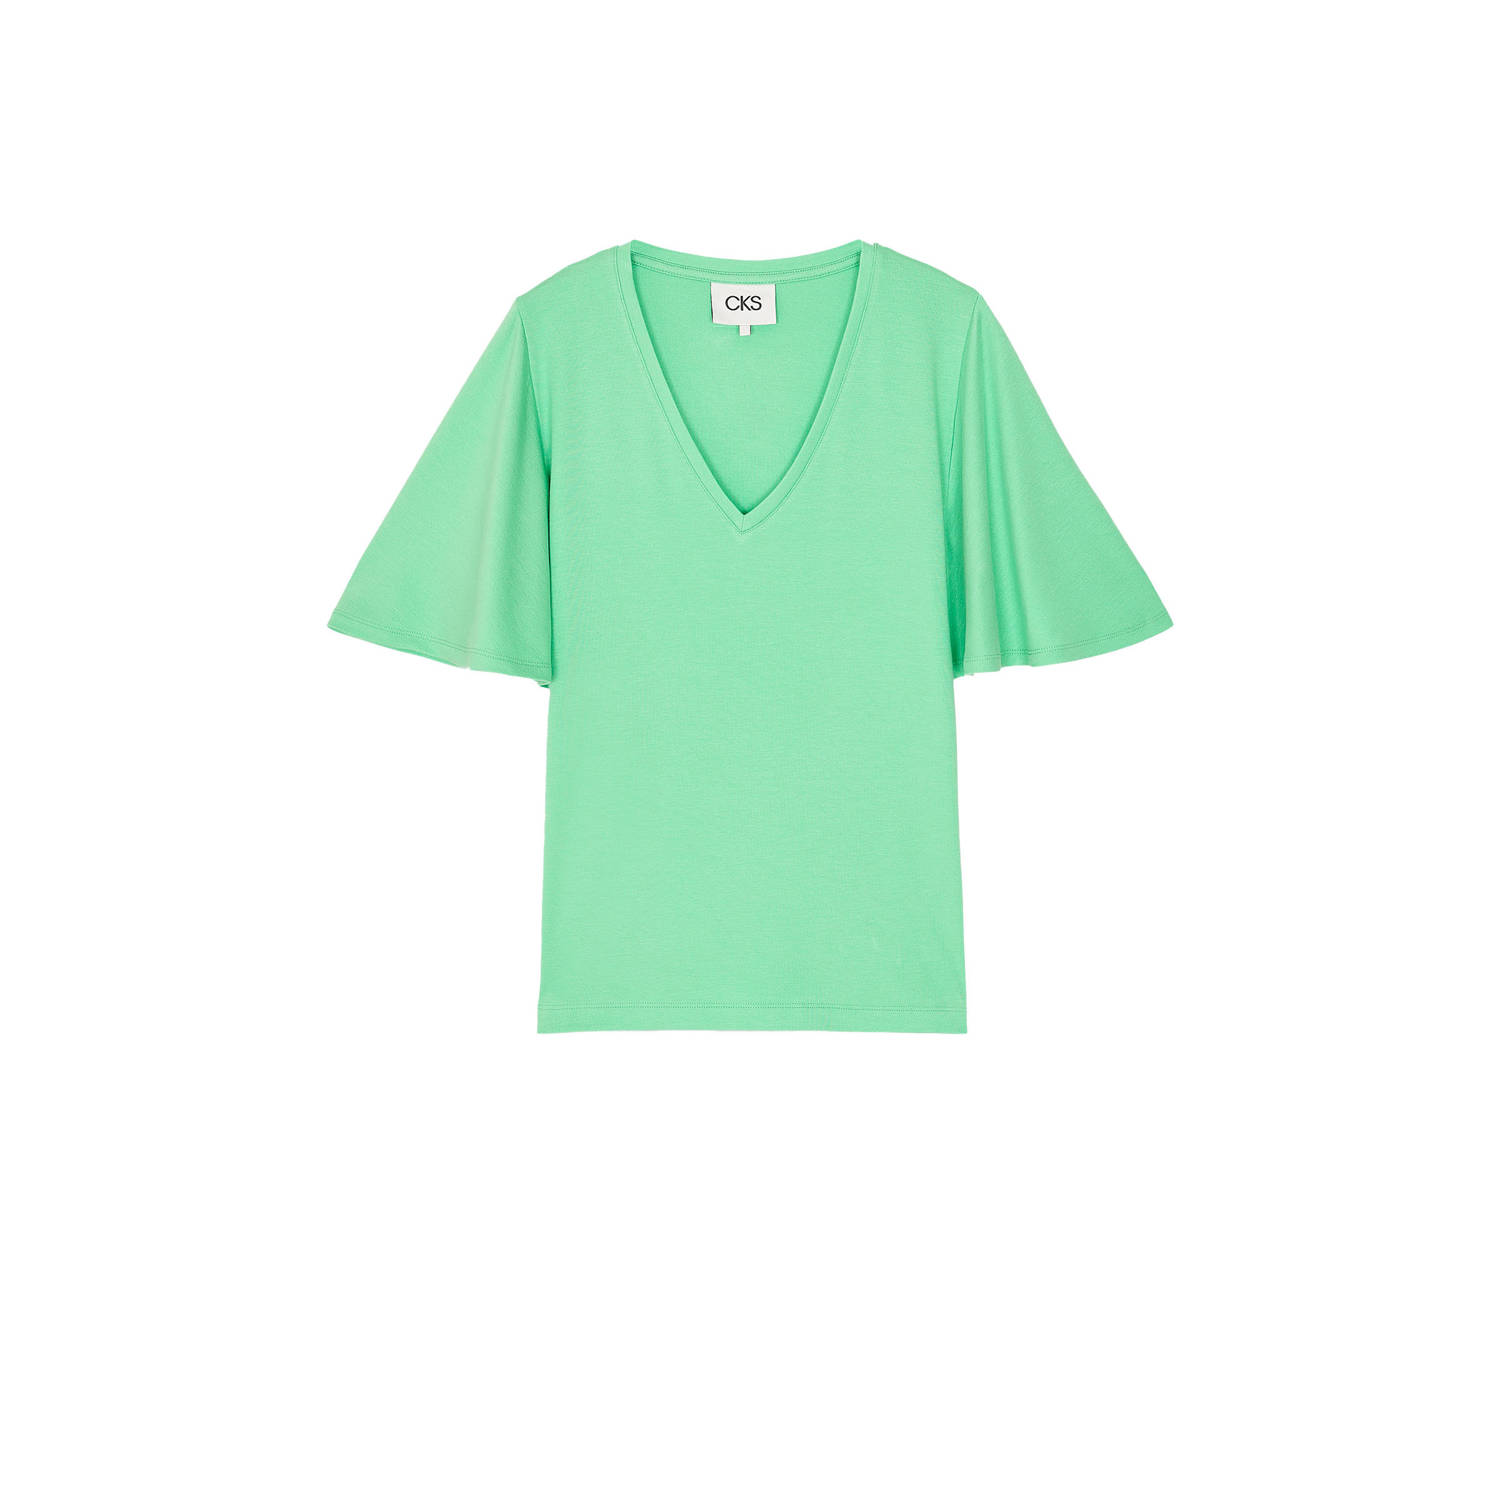 CKS T-shirt groen